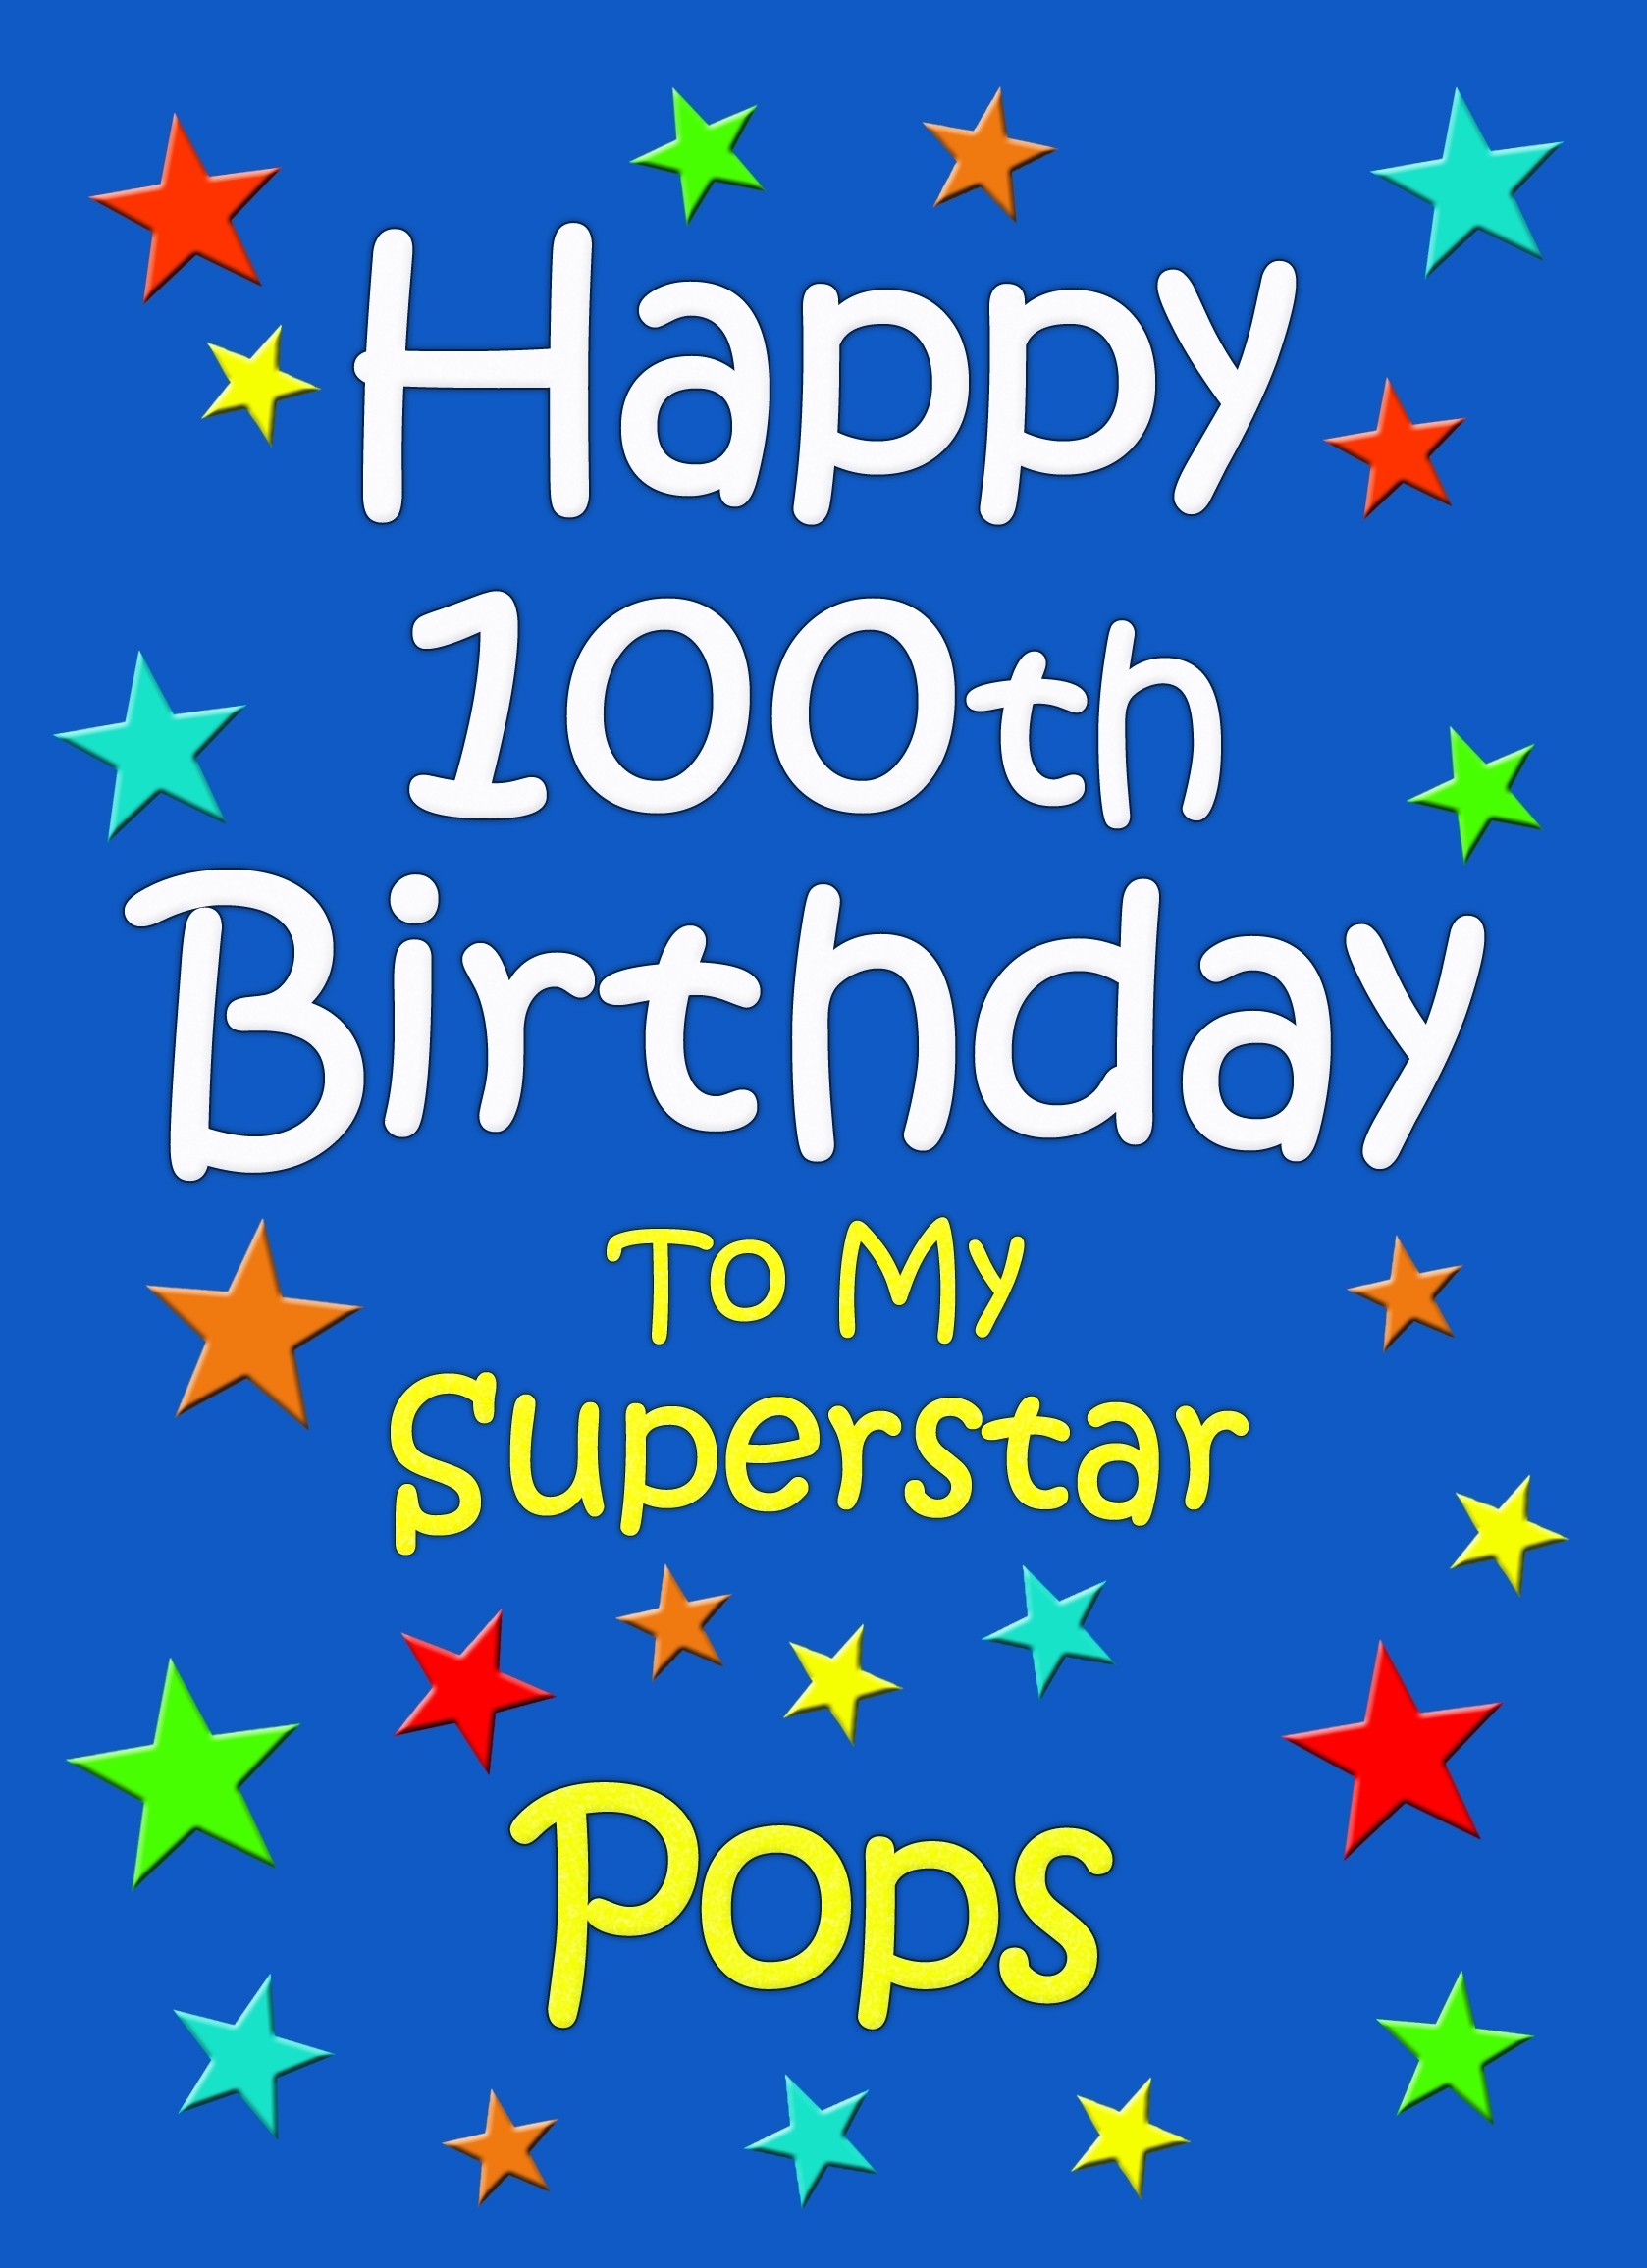 Pops 100th Birthday Card (Blue)